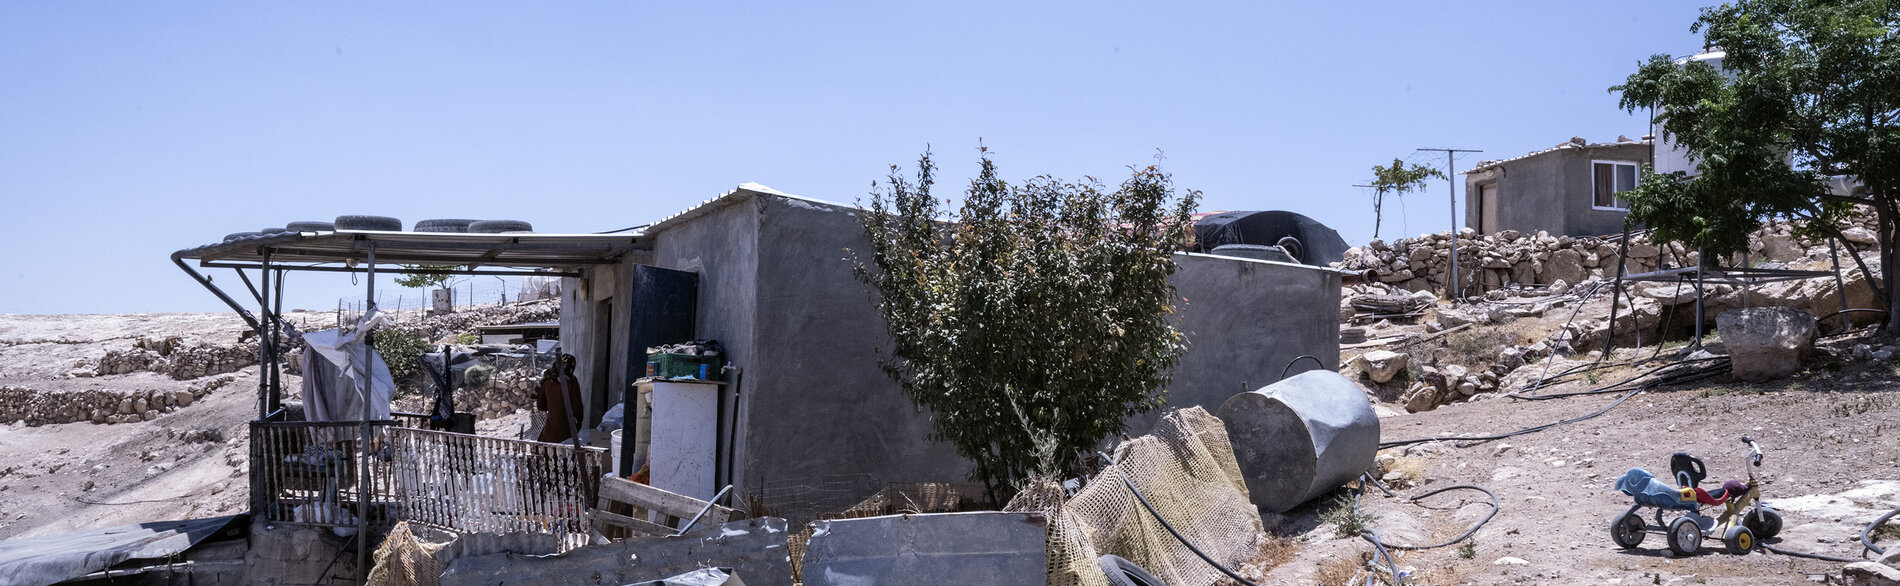 منزل في مسافر يطا. تصوير تانيا حبجوقة/ مكتب الأمم المتحدة لتنسيق الشؤون الإنسانية